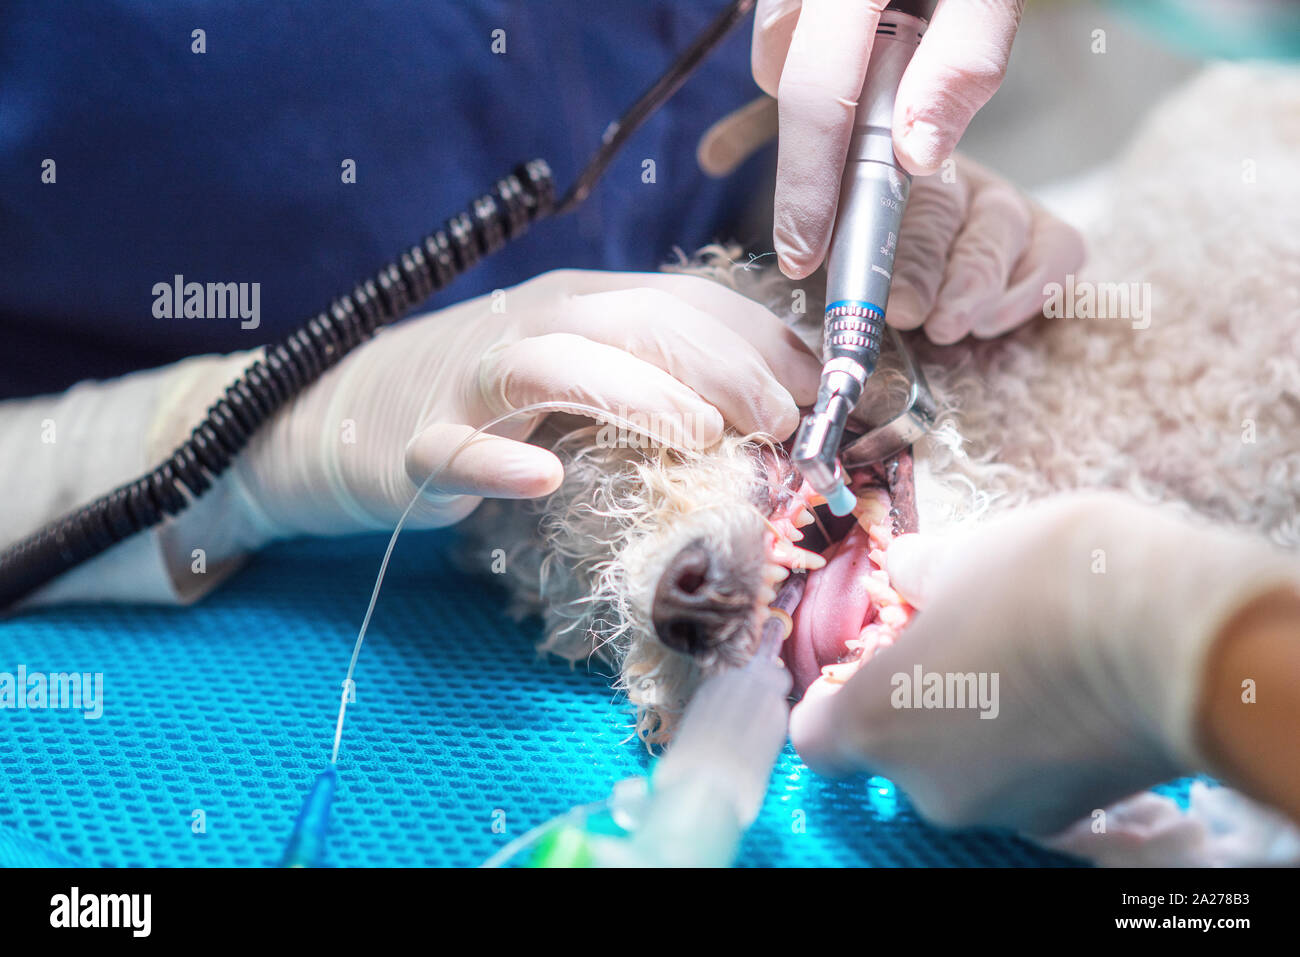 Odontología veterinaria. Cirujano dentista veterinario trata y elimina los dientes de un perro bajo anestesia general en el quirófano de una clínica veterinaria. Saneamiento de la cavidad oral en perros de cerca Foto de stock